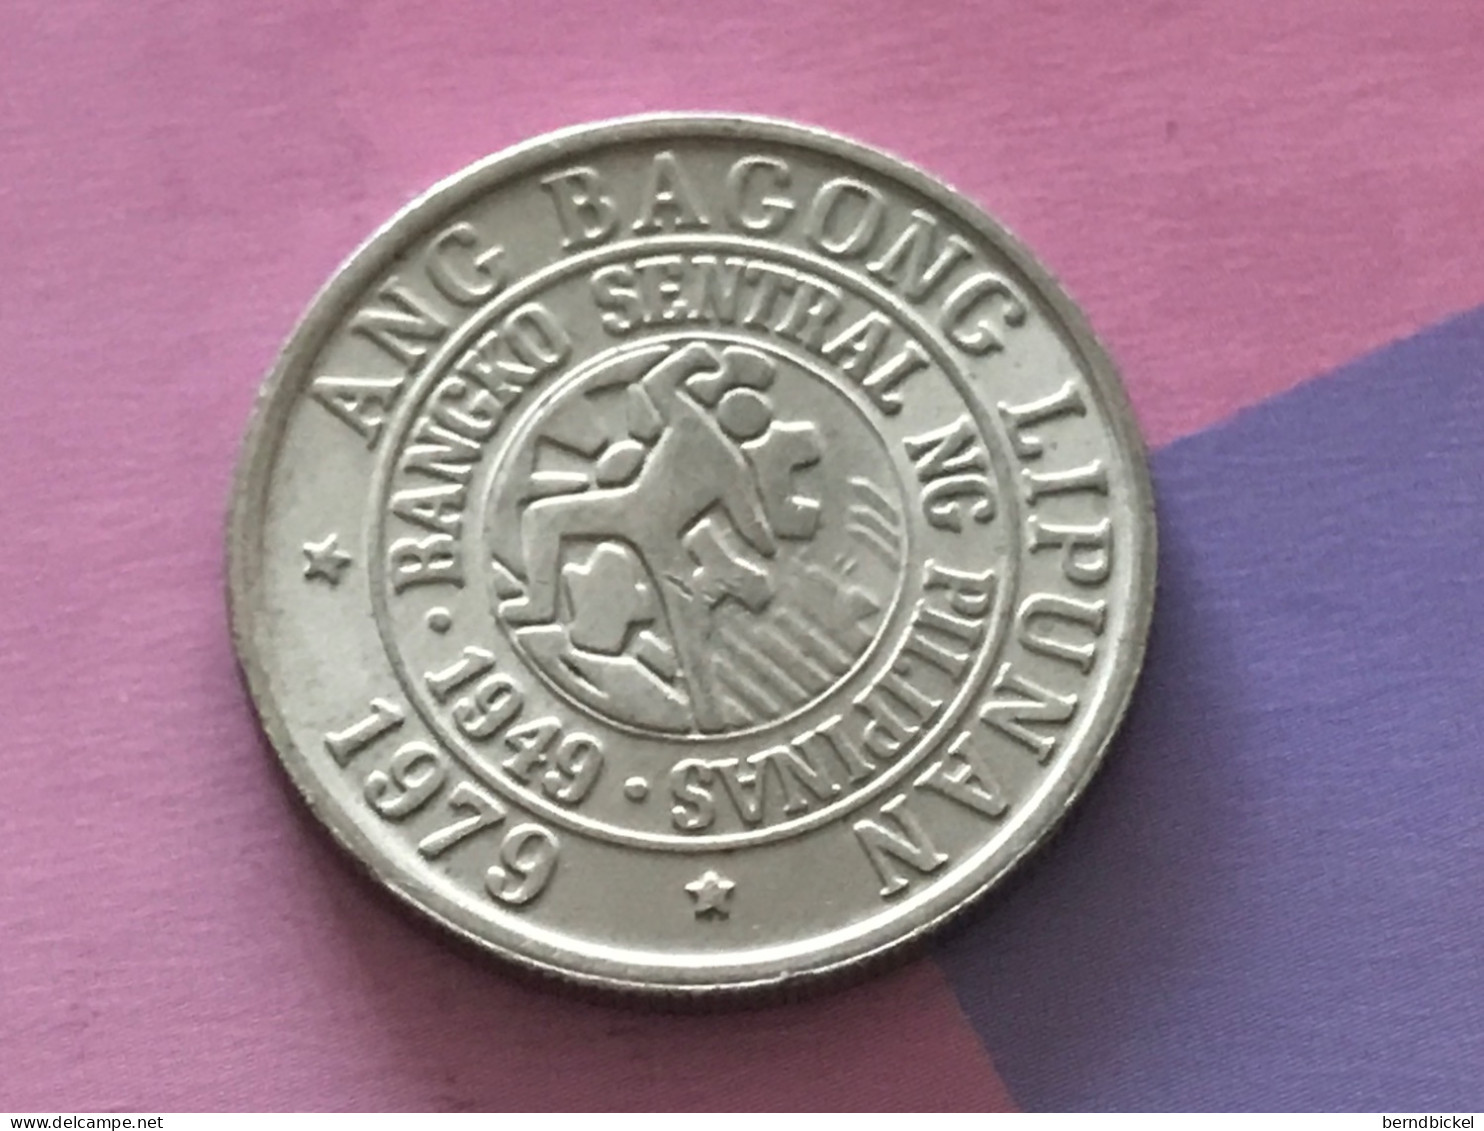 Münze Münzen Umlaufmünze Philippinen 25 Centavos 1979 - Philippines